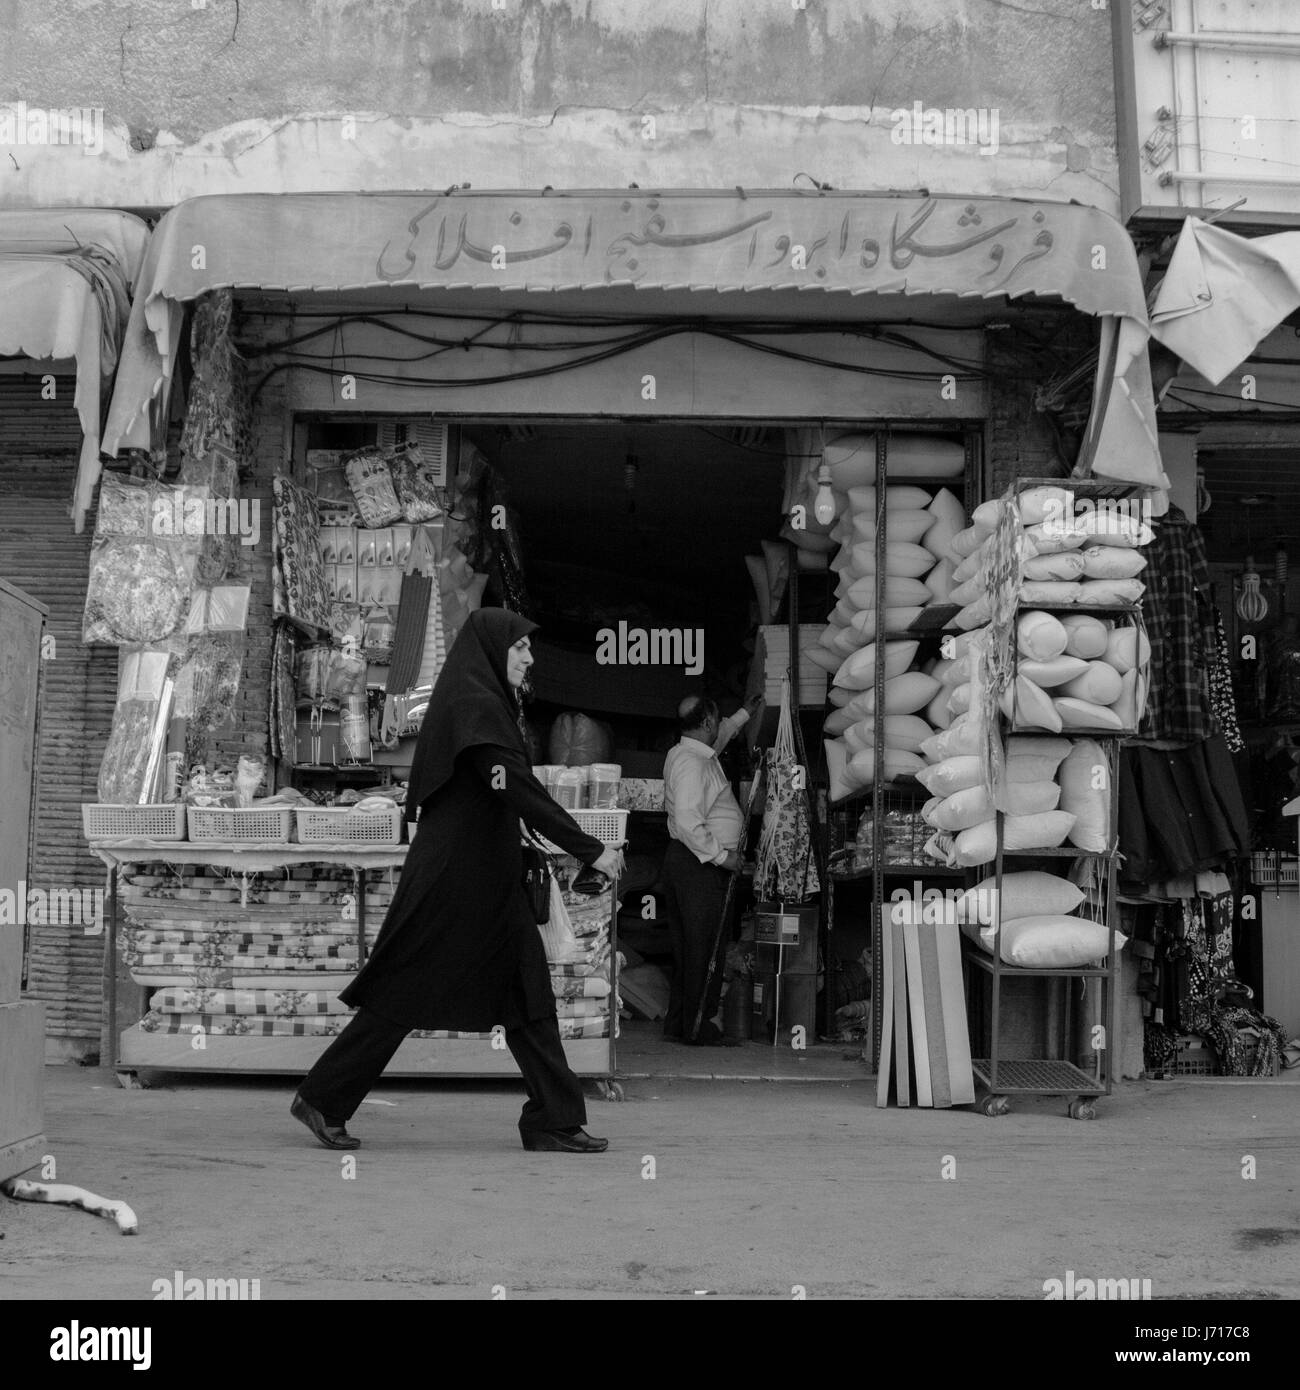 Woman in Esfahan bazaar, Iran Stock Photo